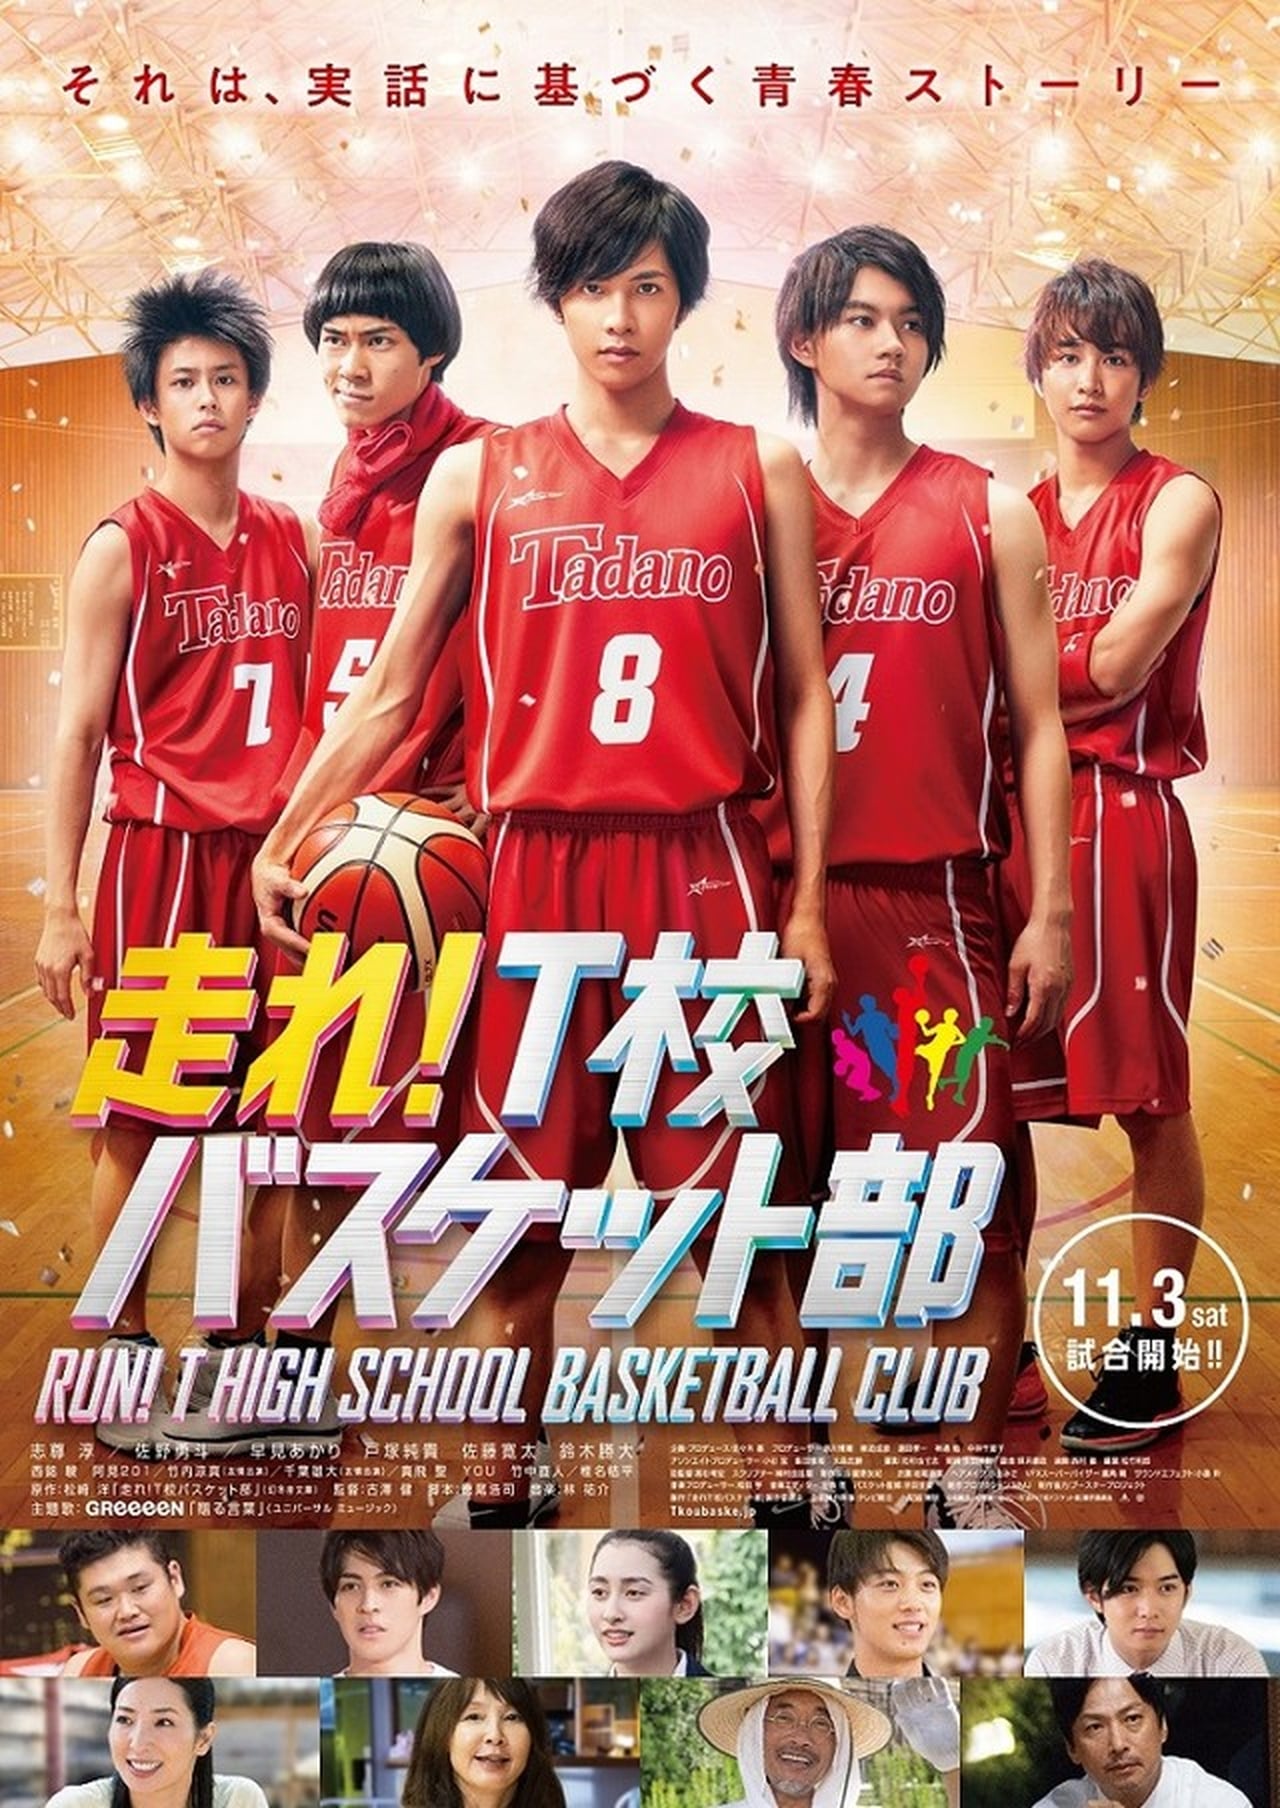 Download Hashire! T Ko Basuketto Bu , Run! T High School Basketball Club, Run! T School Basket Club (2018) Sub Indo